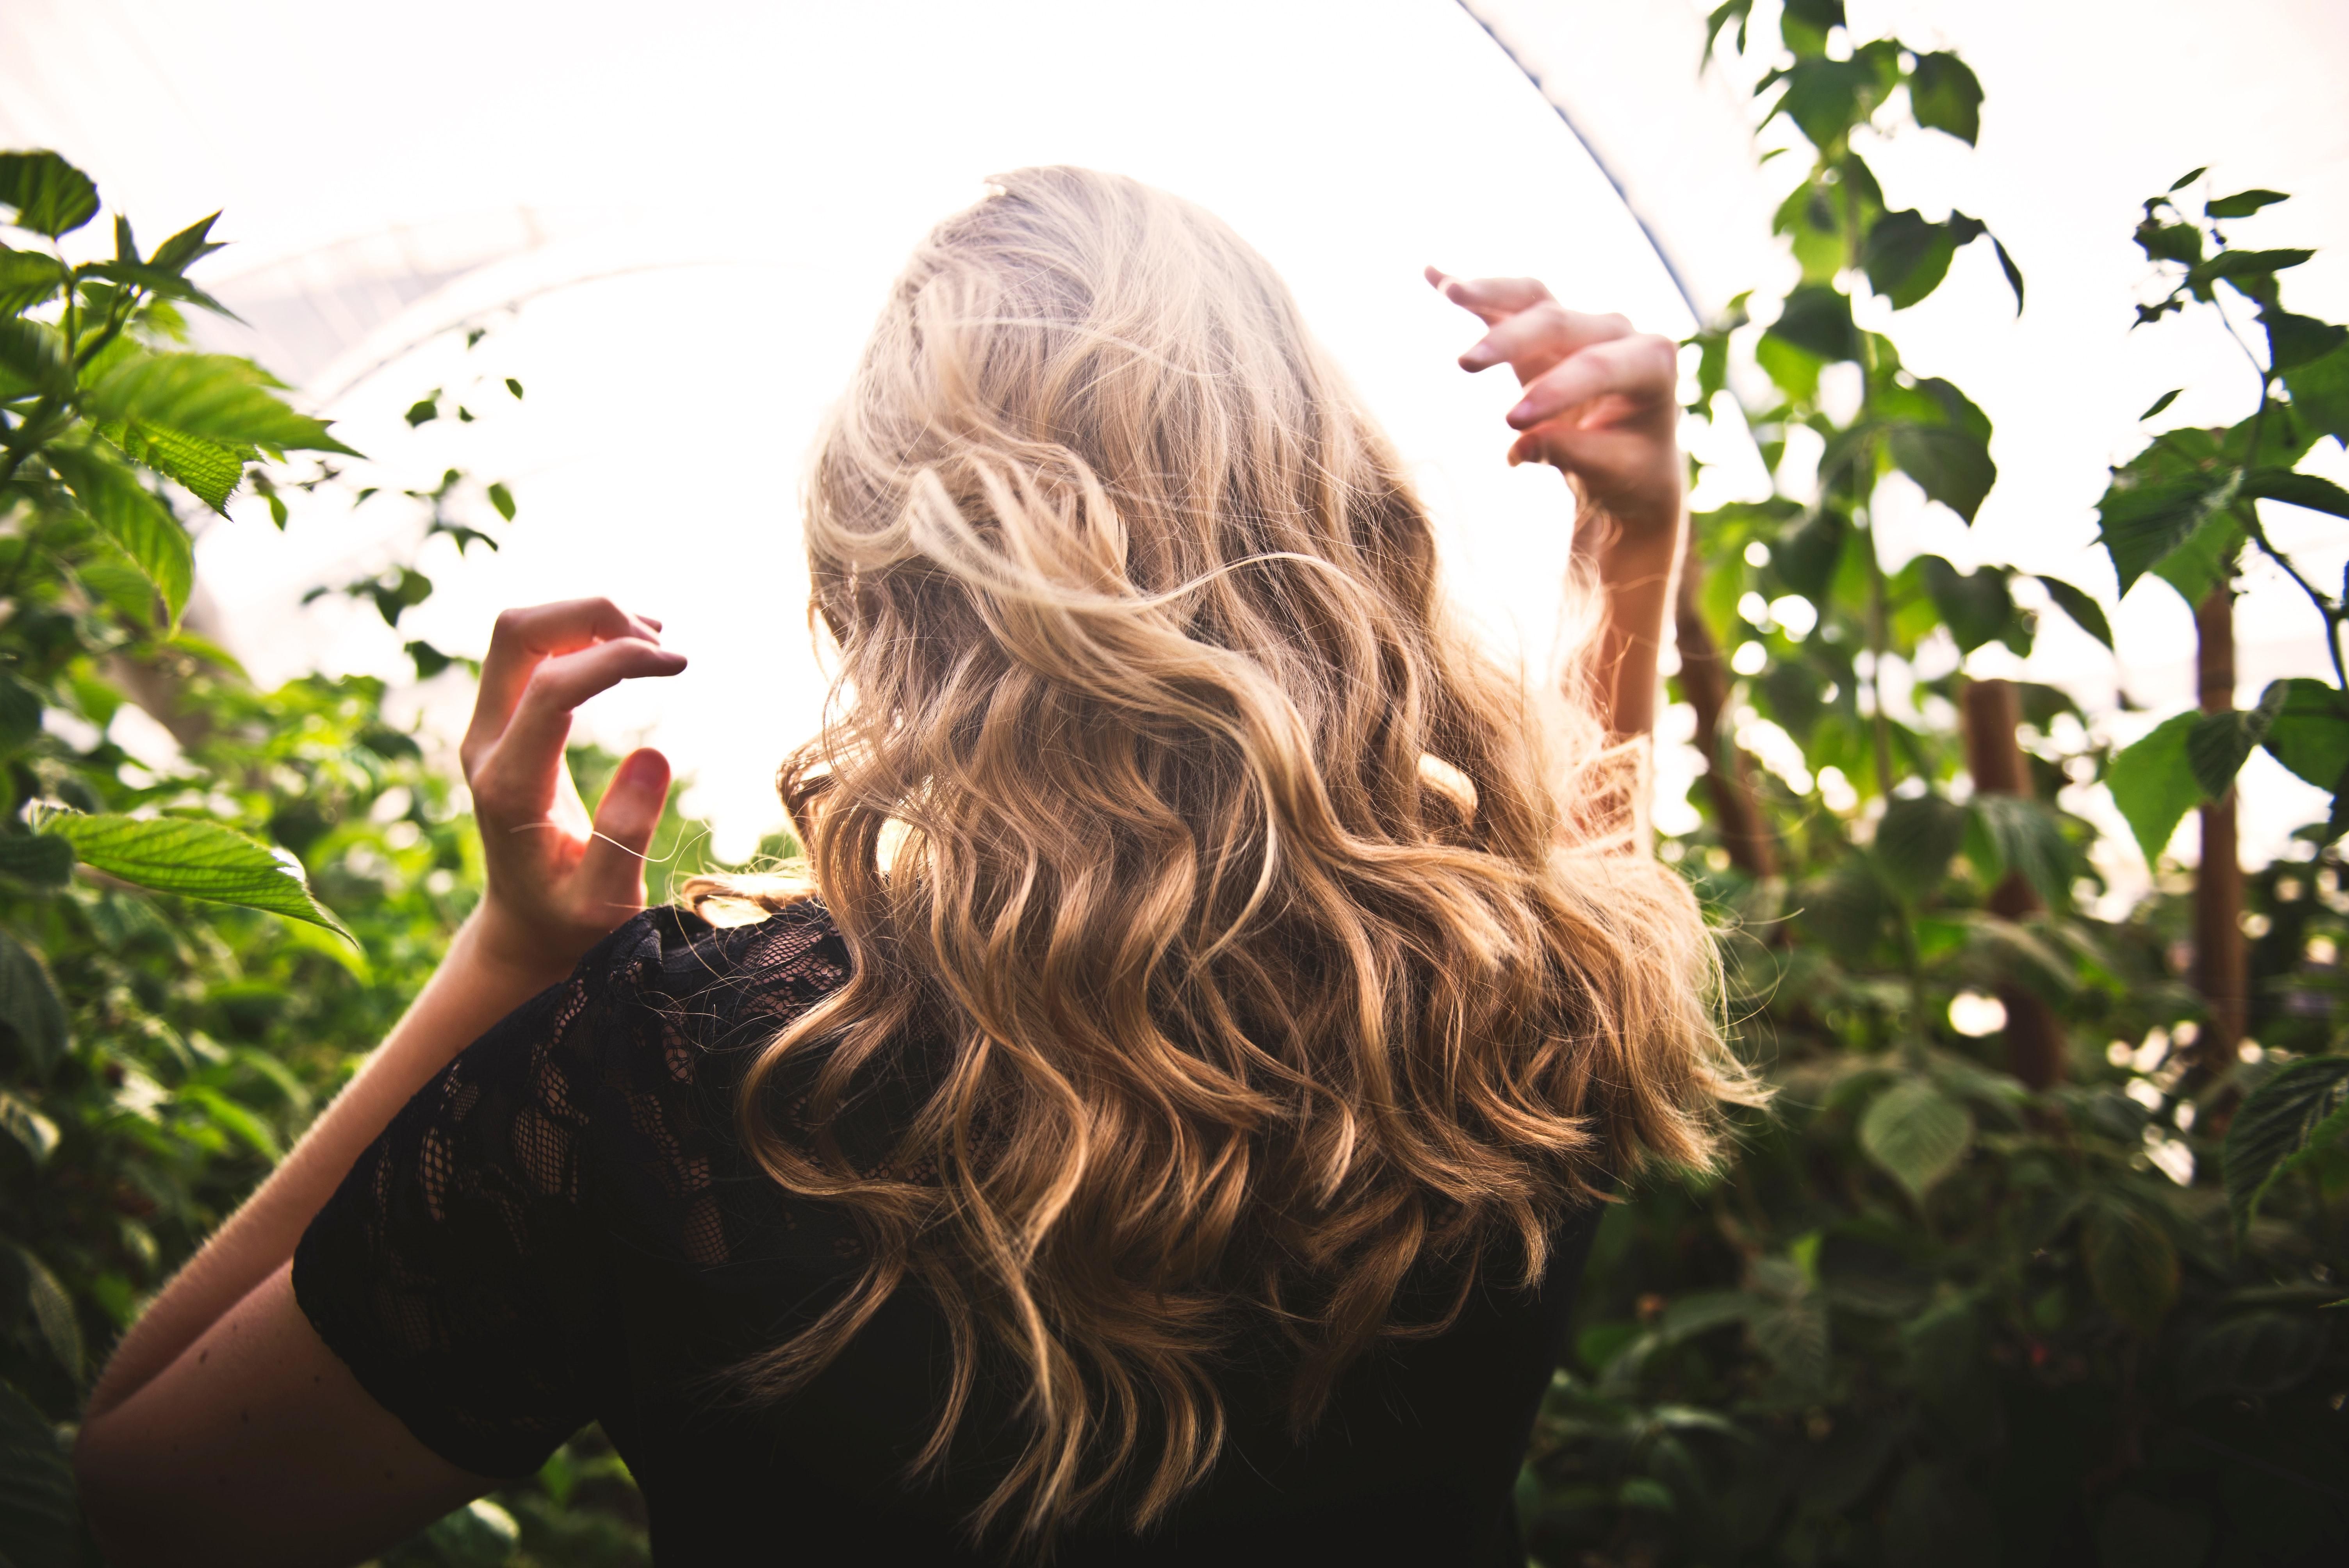 7 перевірених способів, як зберегти красу вашого волосся цієї осені - Краса